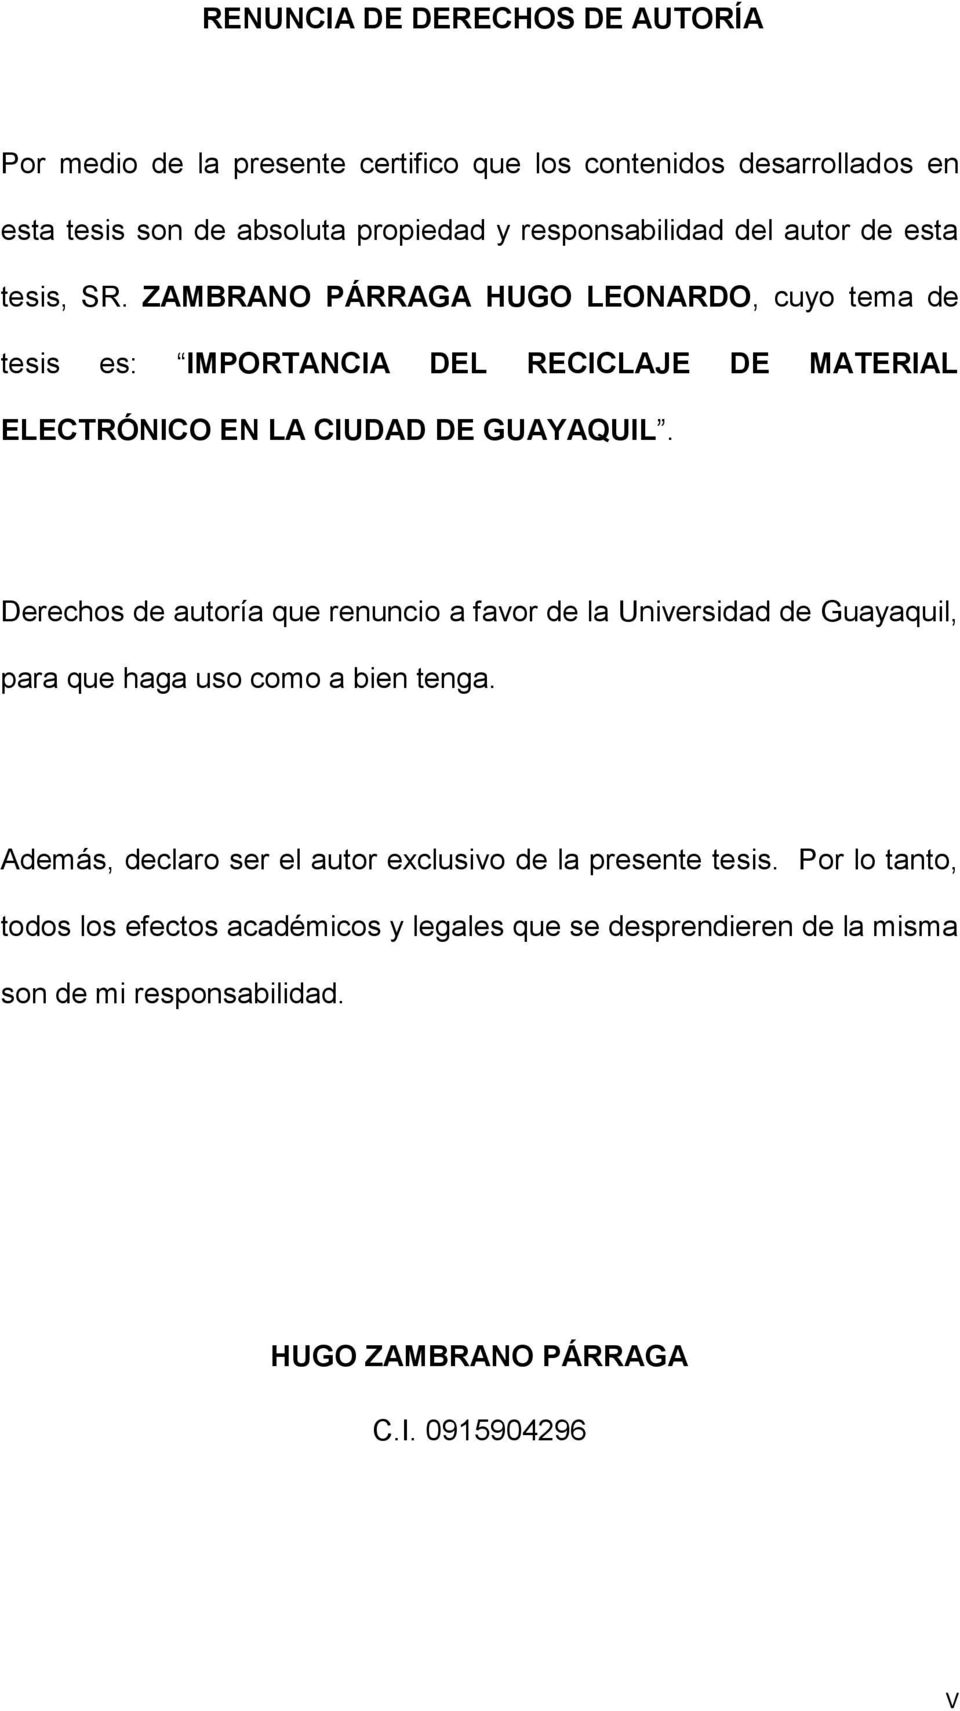 Derechos de autoría que renuncio a favor de la Universidad de Guayaquil, para que haga uso como a bien tenga.